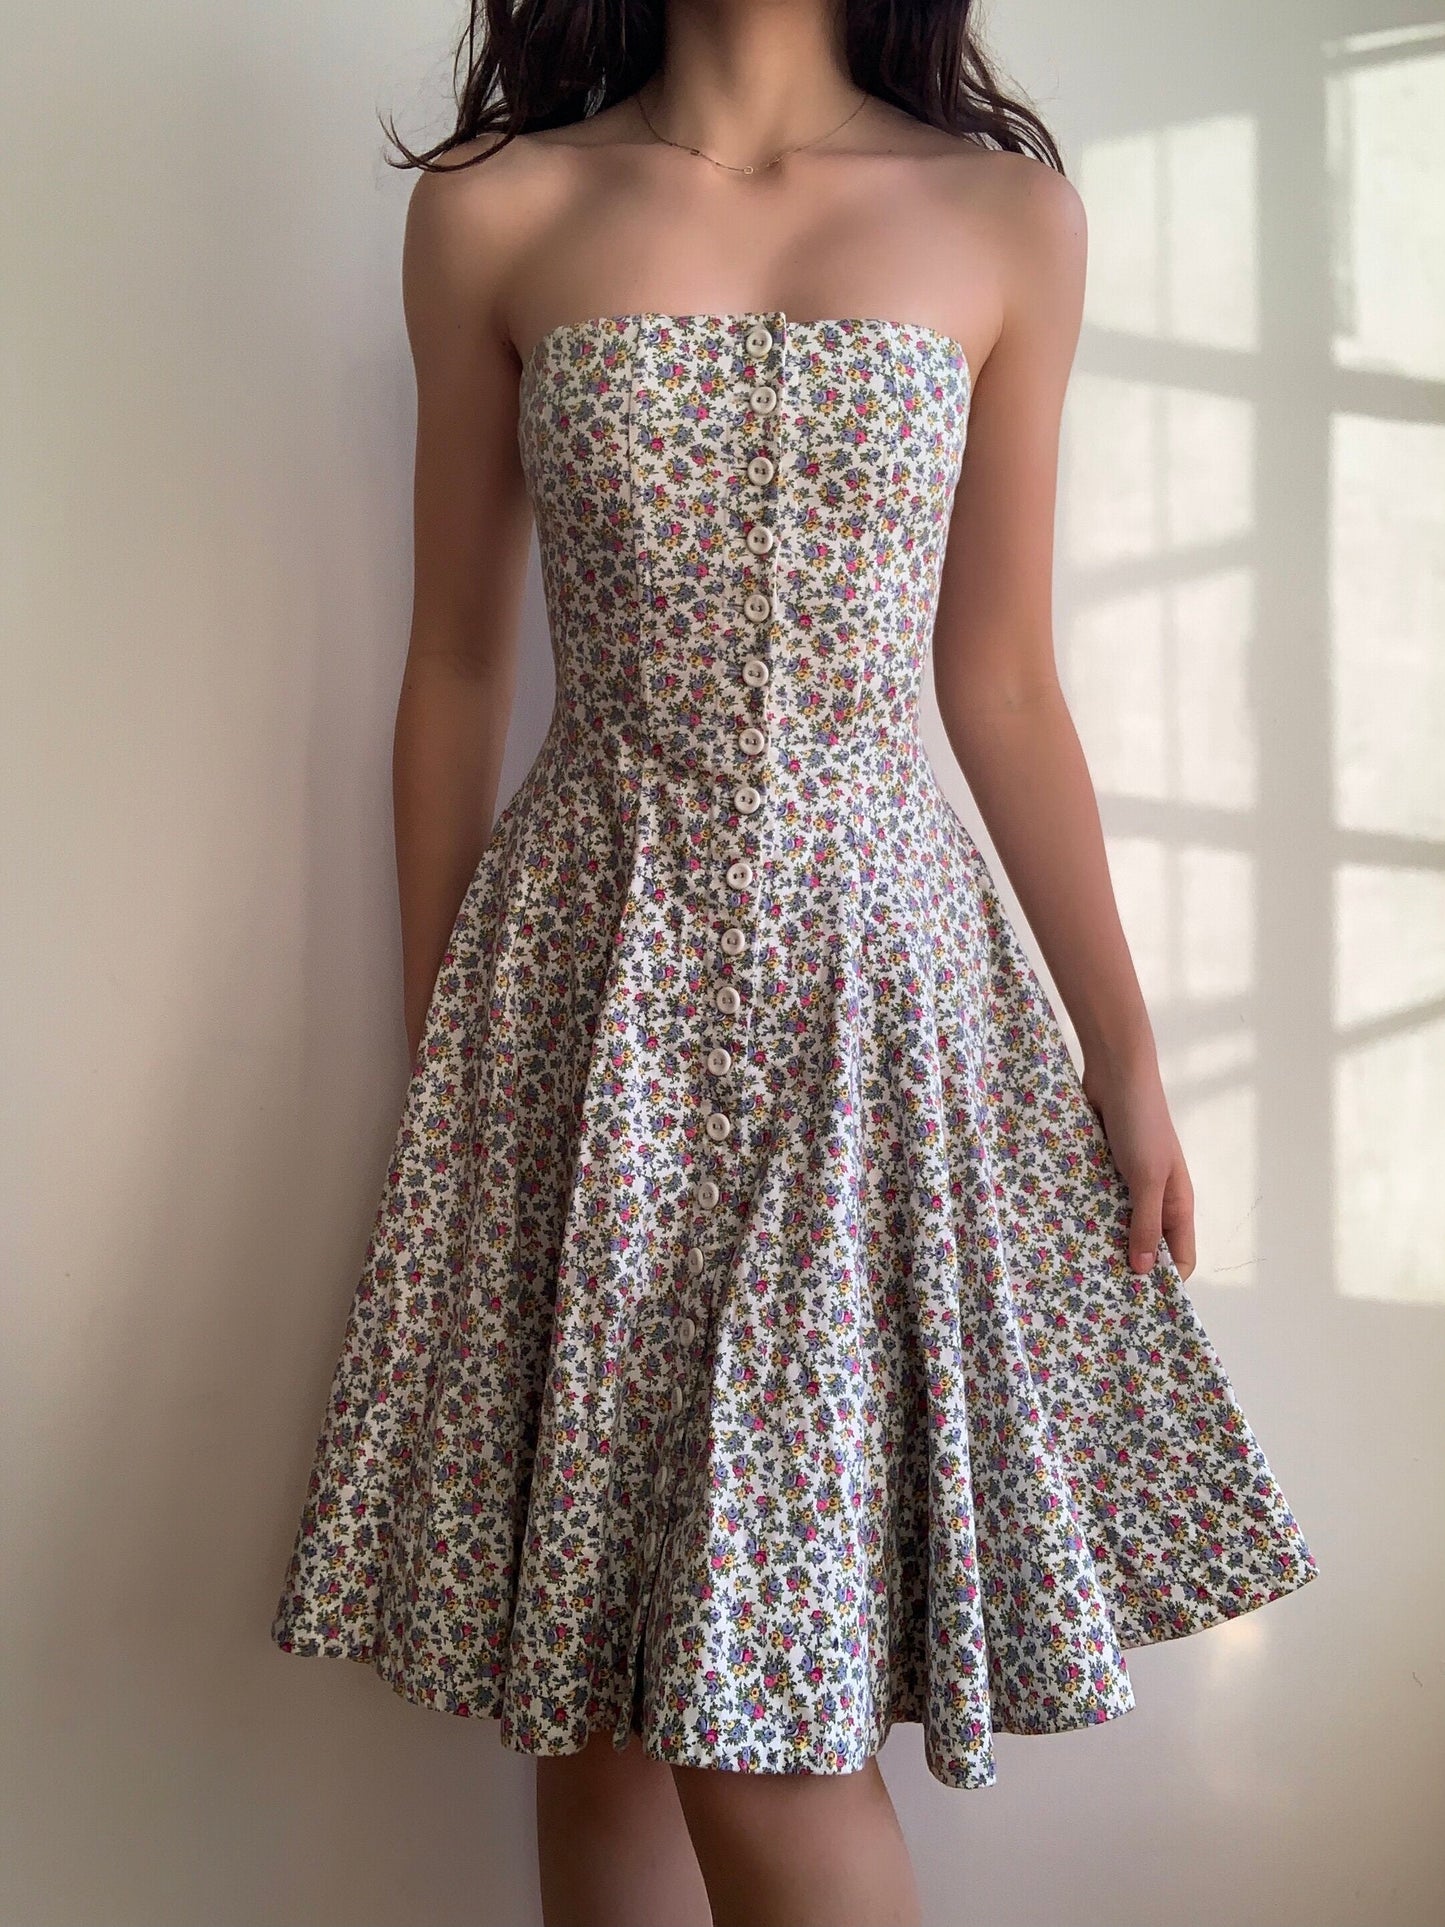 Floral Corset Dress (XS/S)